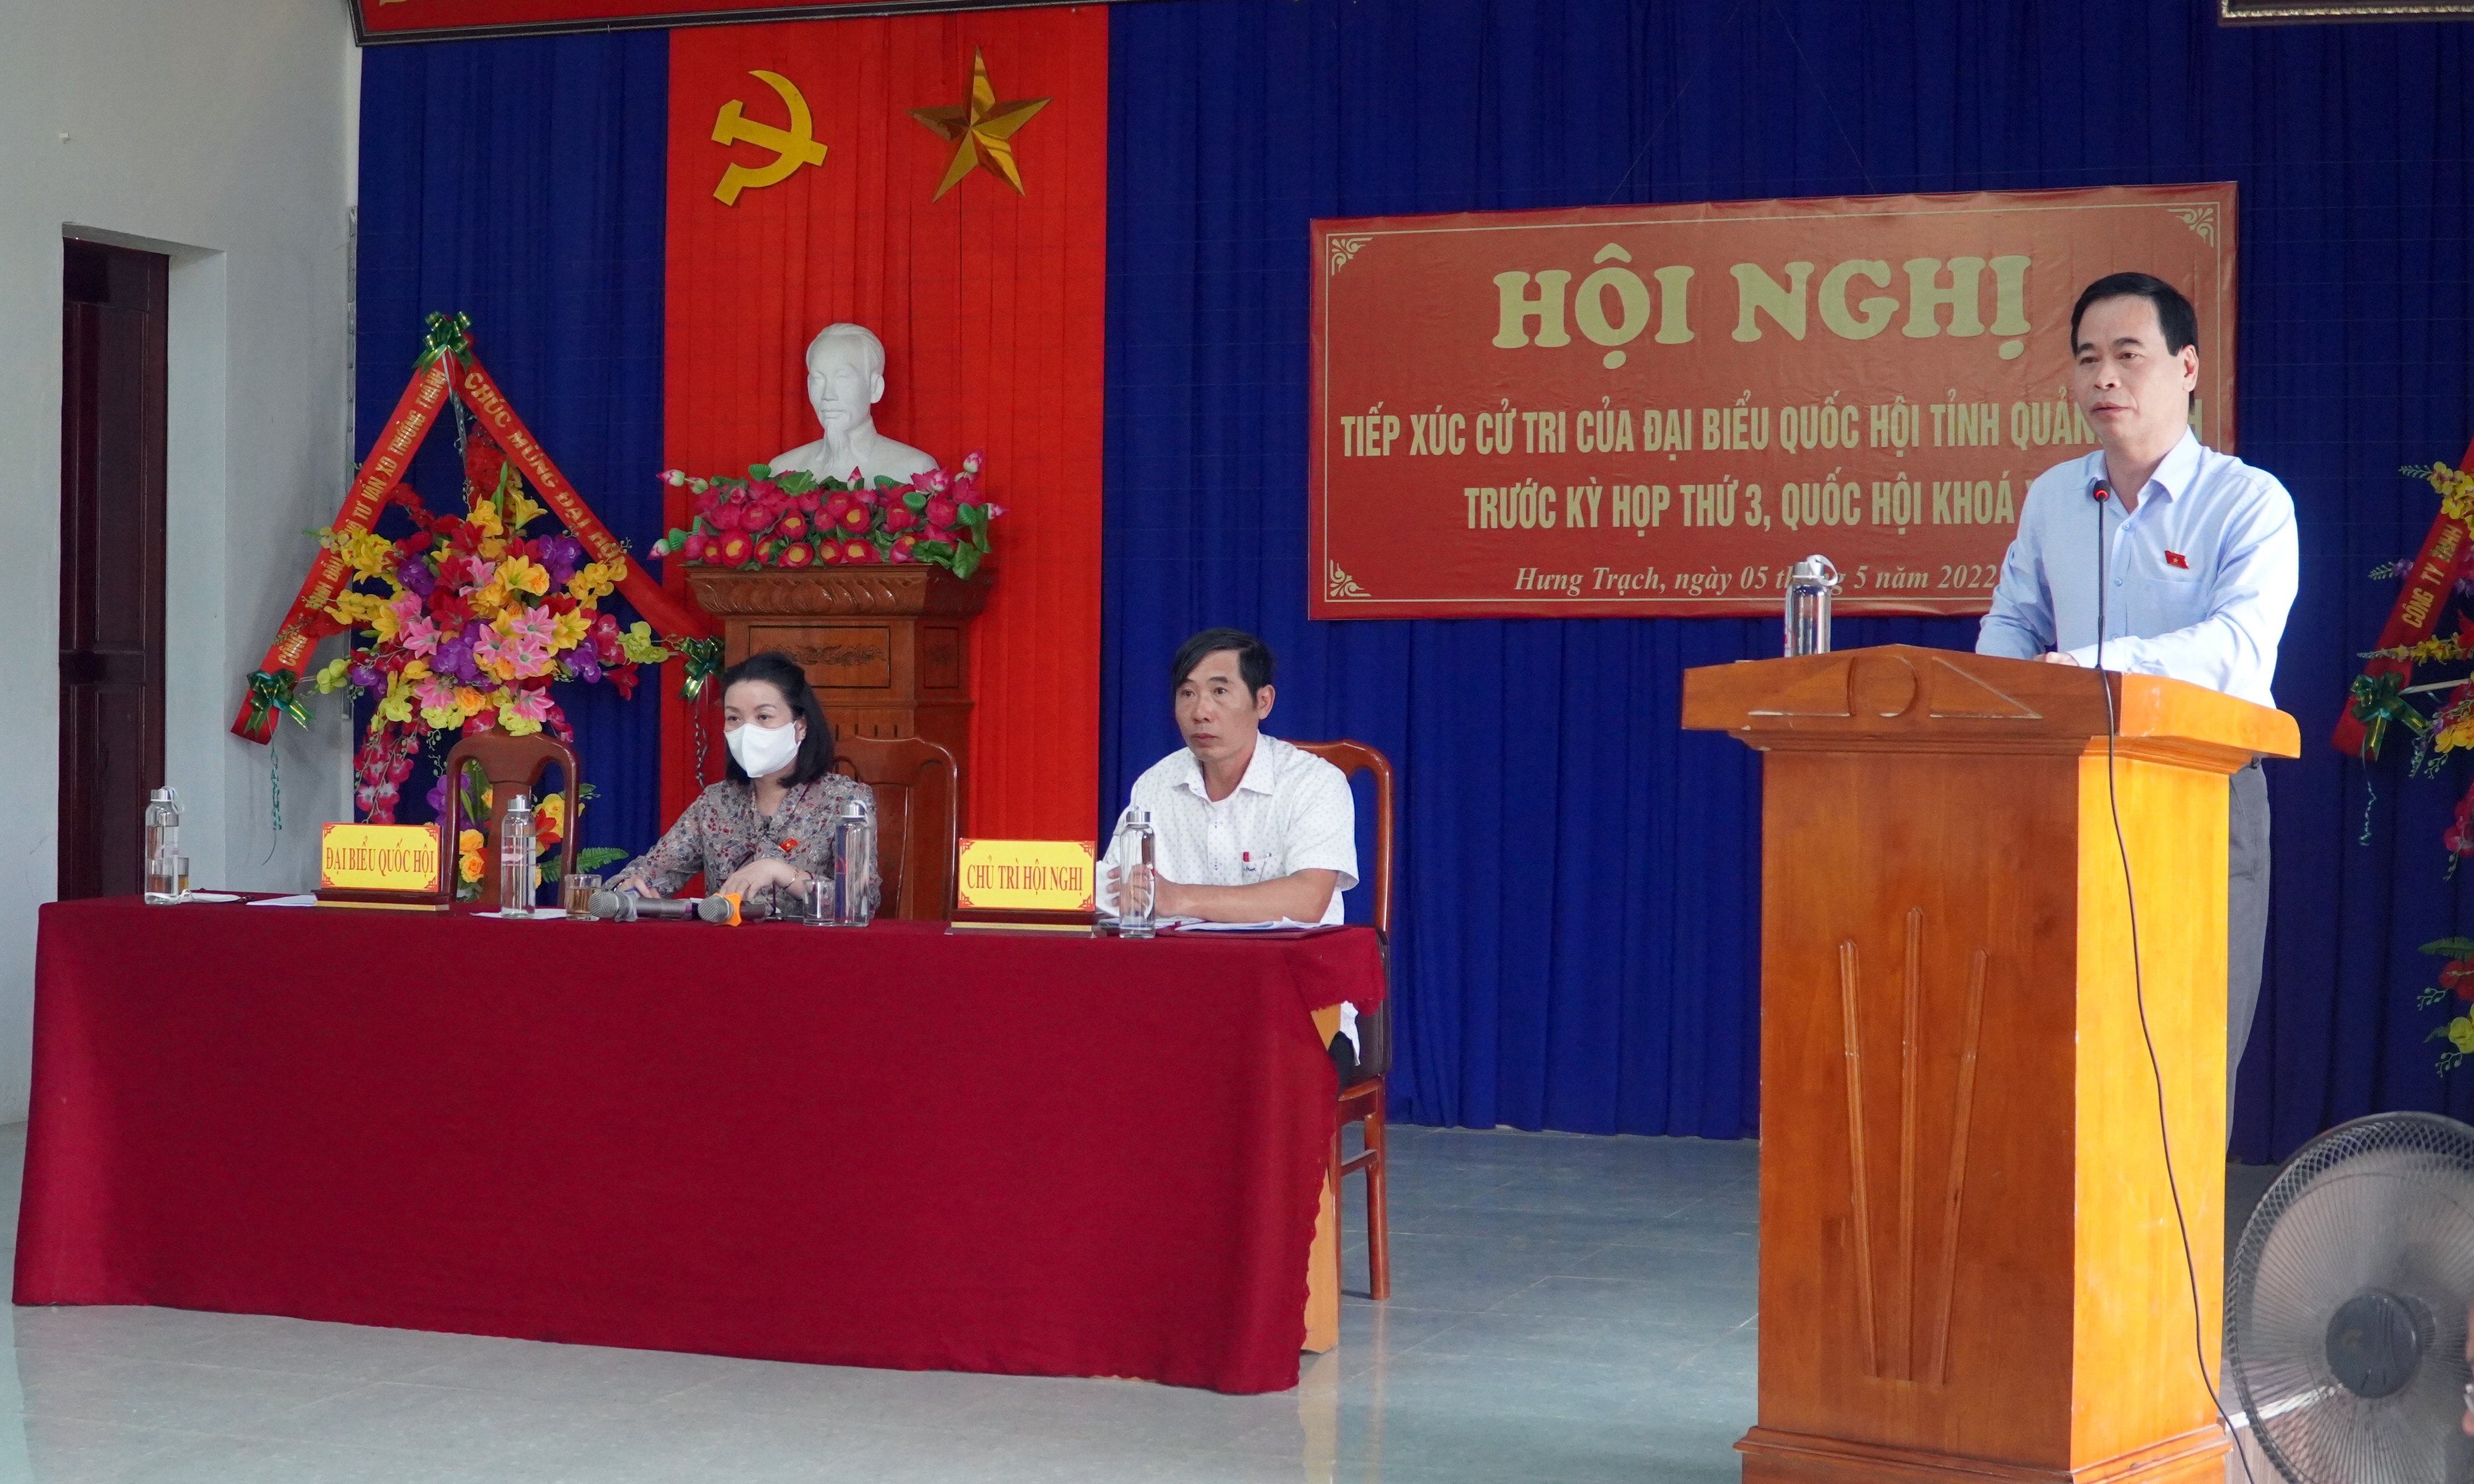  Đại biểu Nguyễn Mạnh Cường thông tin với cử tri về nội dung, chương trình kỳ họp.